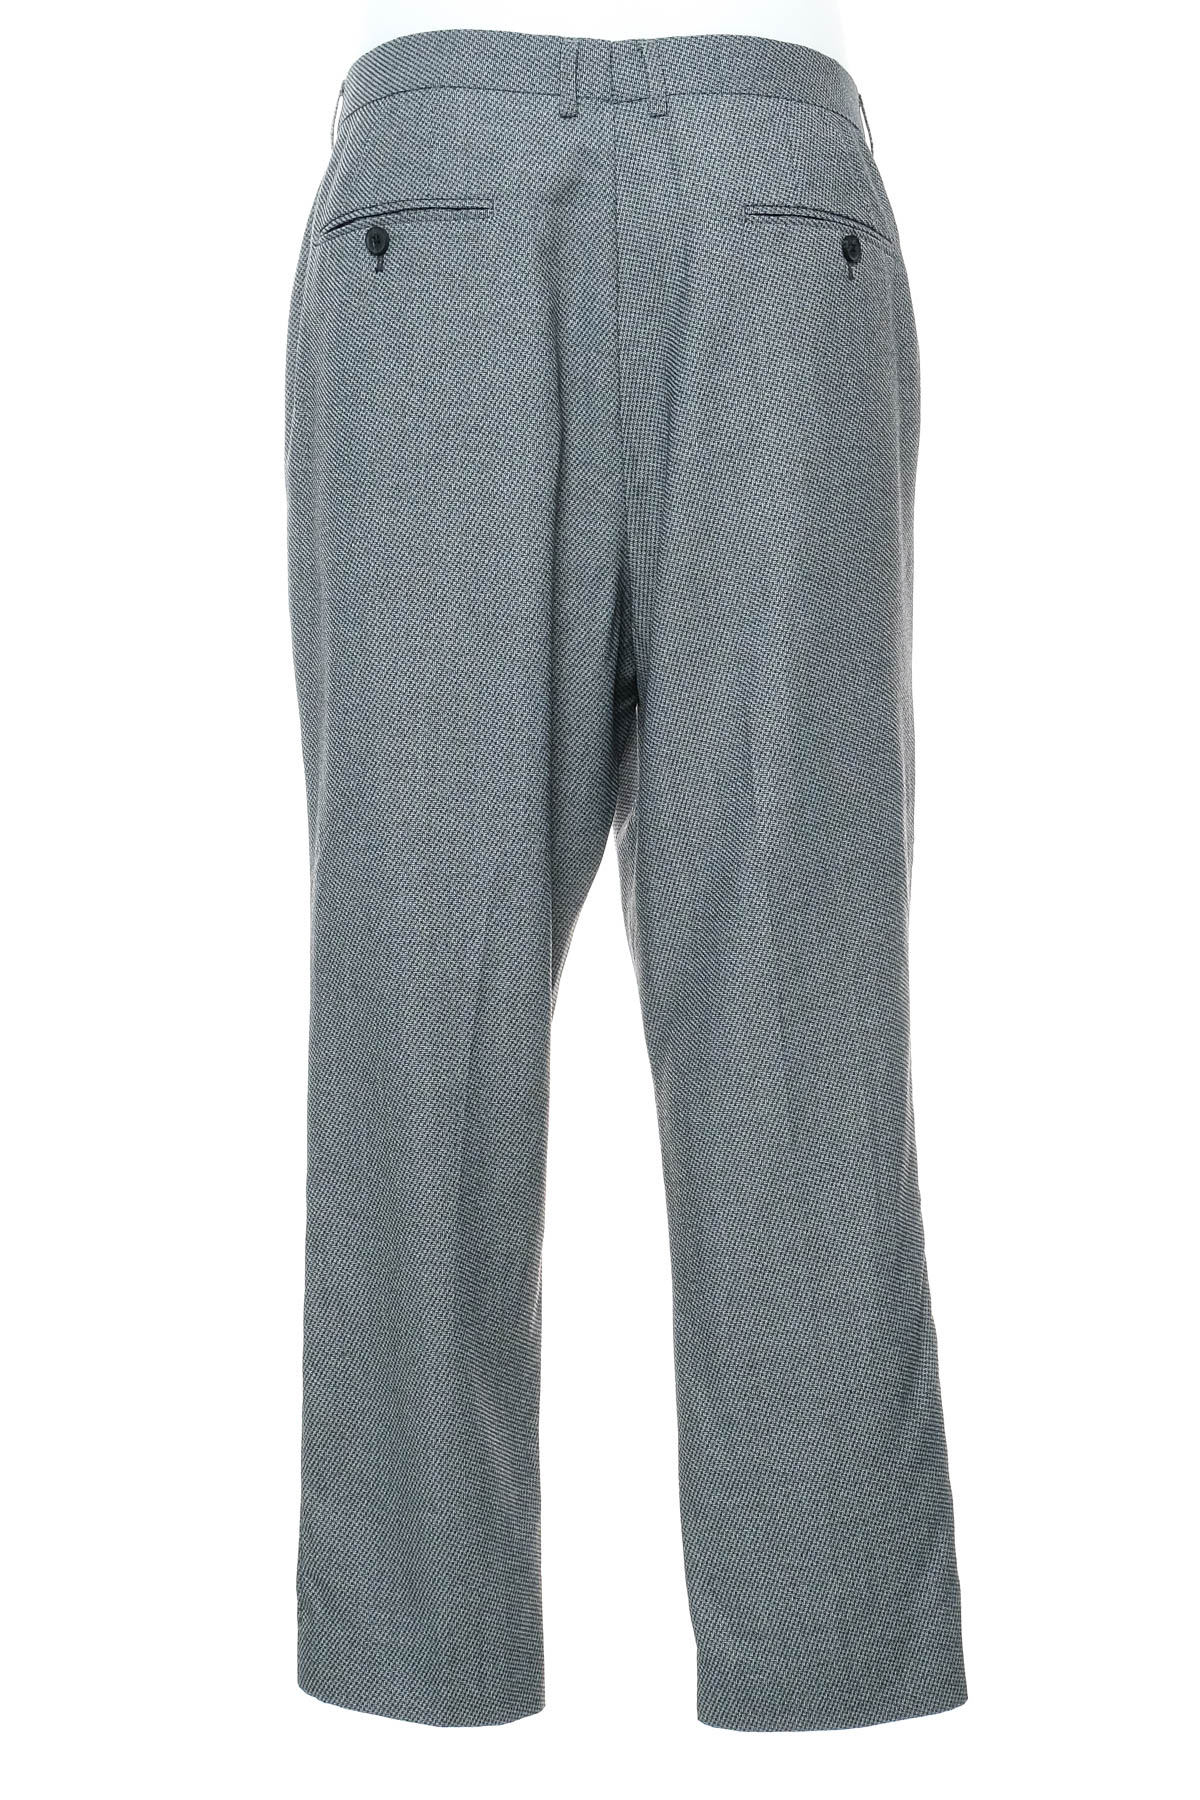 Pantalon pentru bărbați - HARRY BROWN - 1